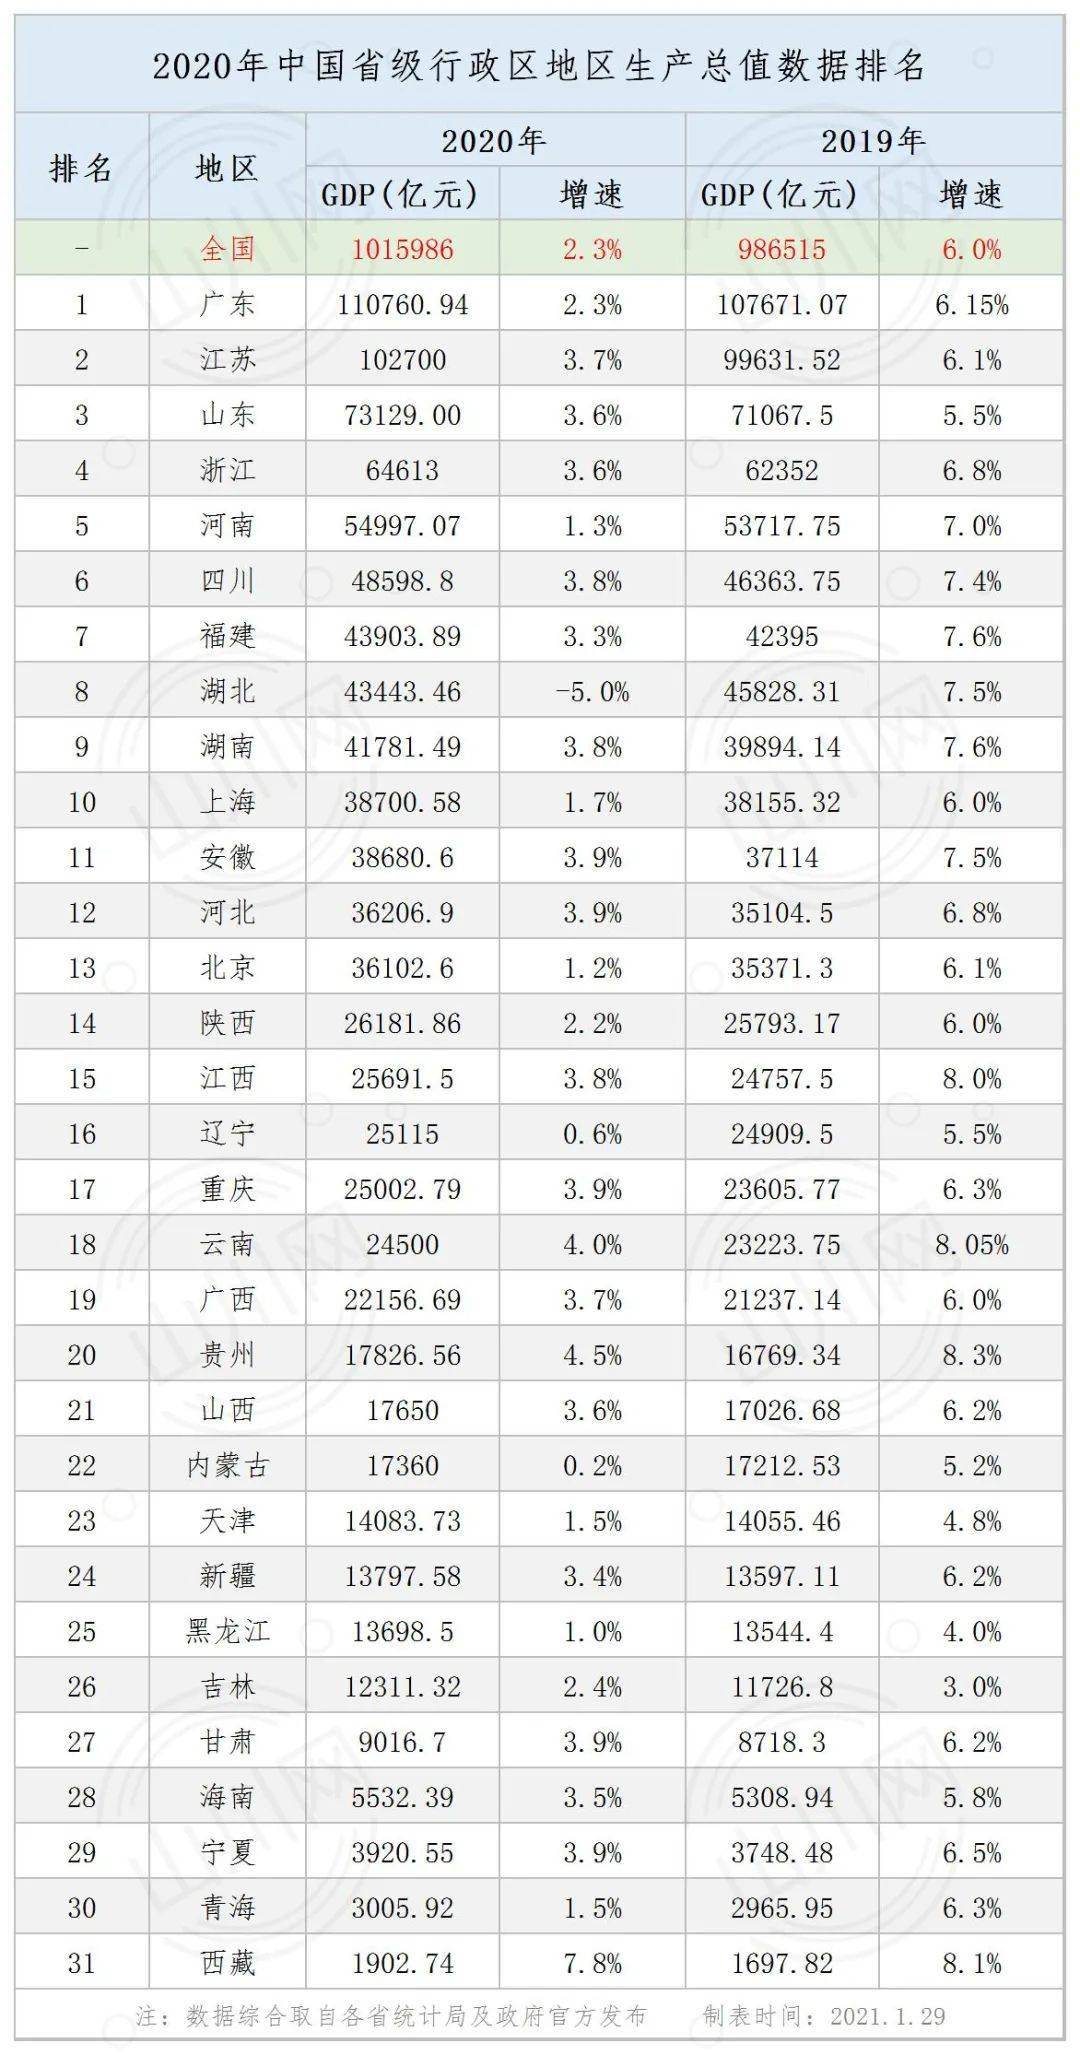 2019河北省gdp排名_2019年度河北省地级市人均GDP排名唐山市超8万元居全省第一